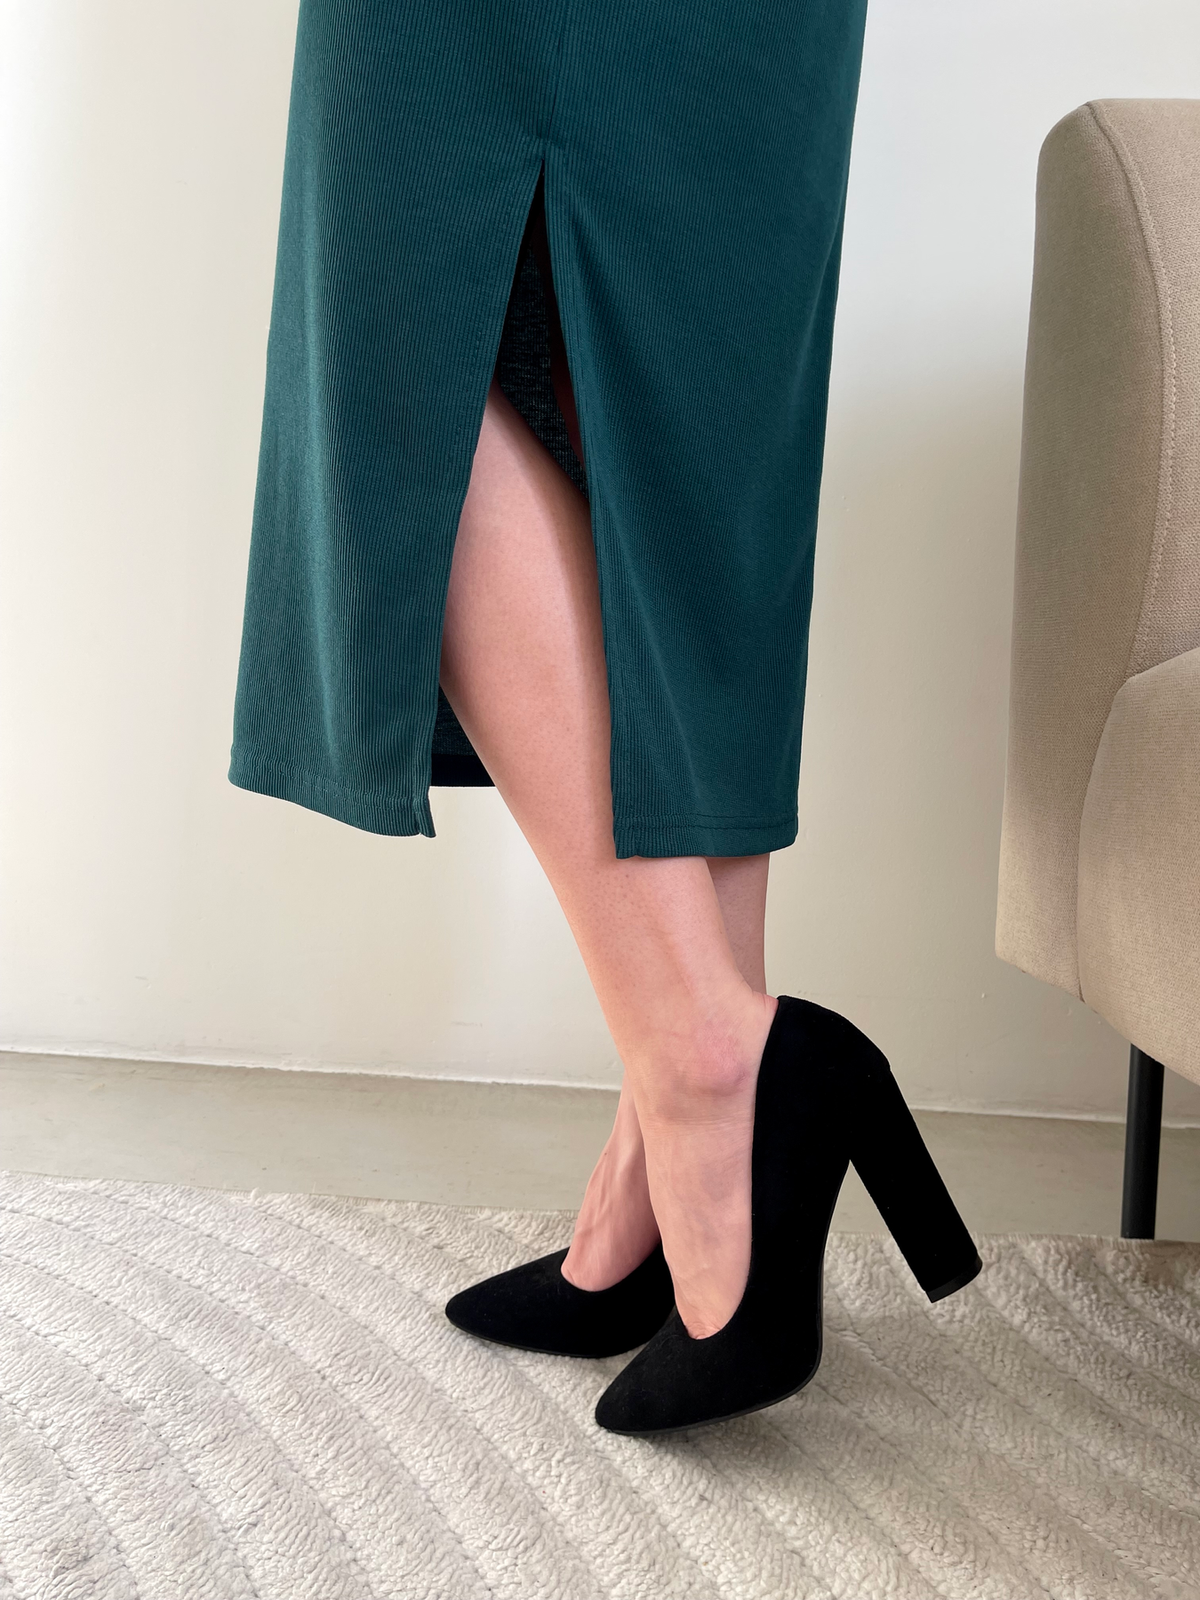 Купить Длинное платье зеленое в рубчик с длинным рукавом Merlini Кондо 700001163, размер 42-44 (S-M) в интернет-магазине